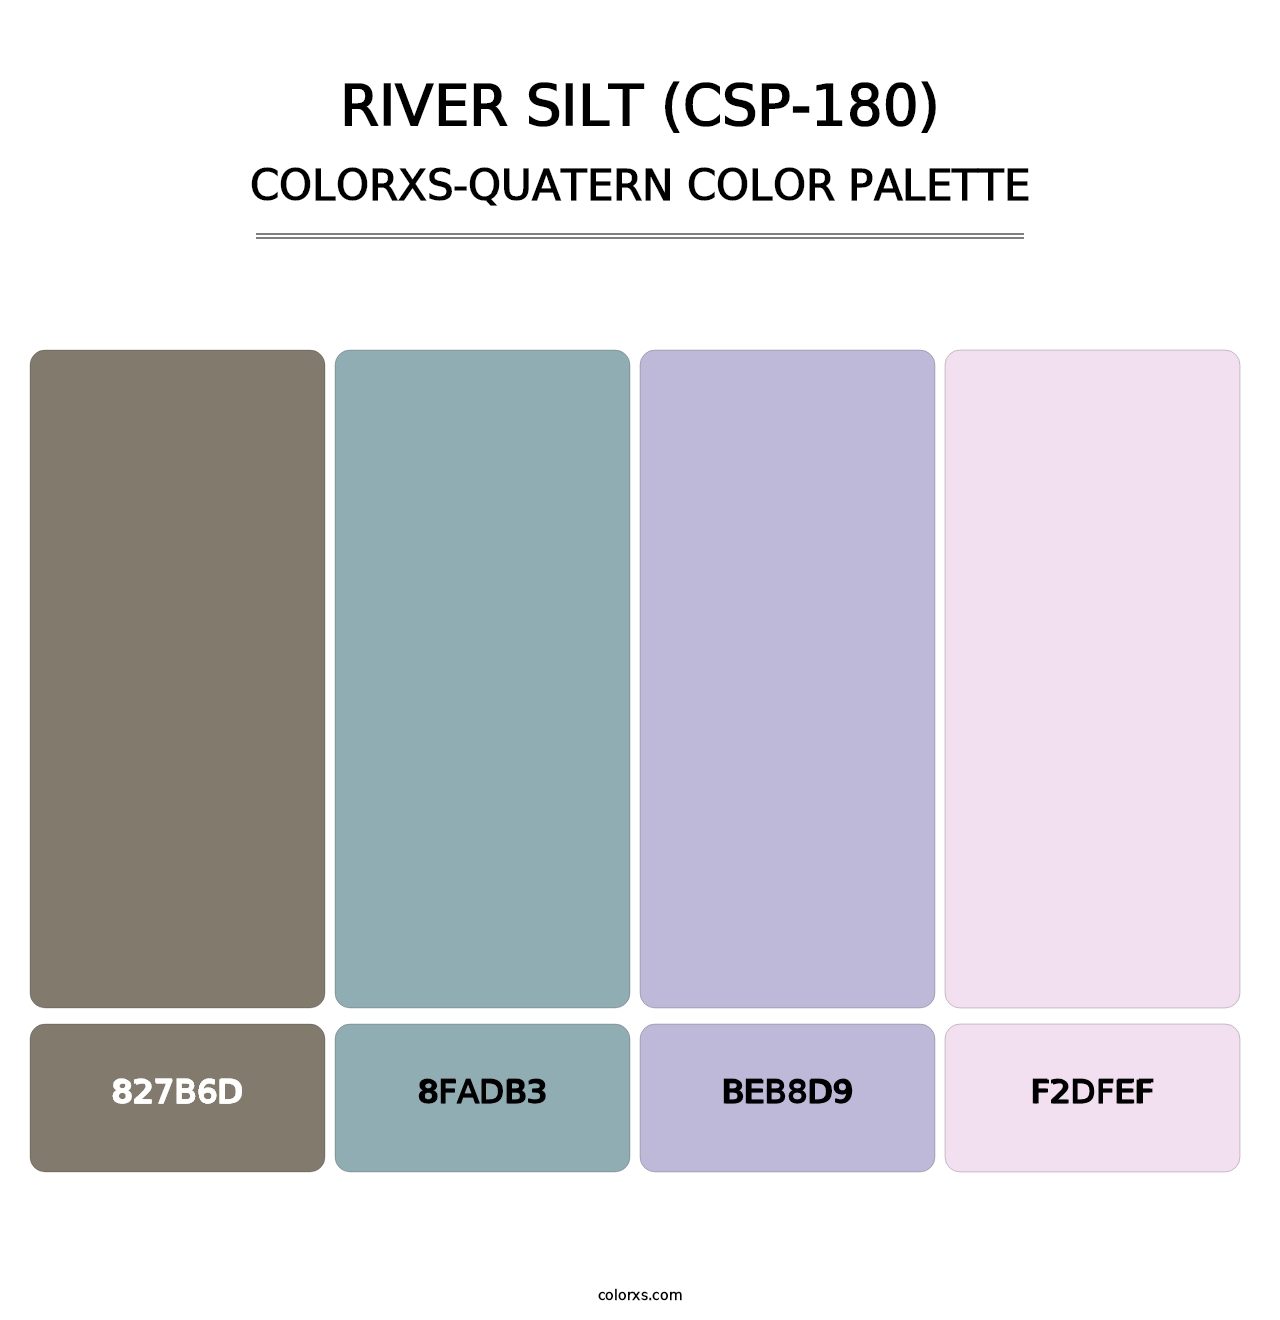 River Silt (CSP-180) - Colorxs Quatern Palette